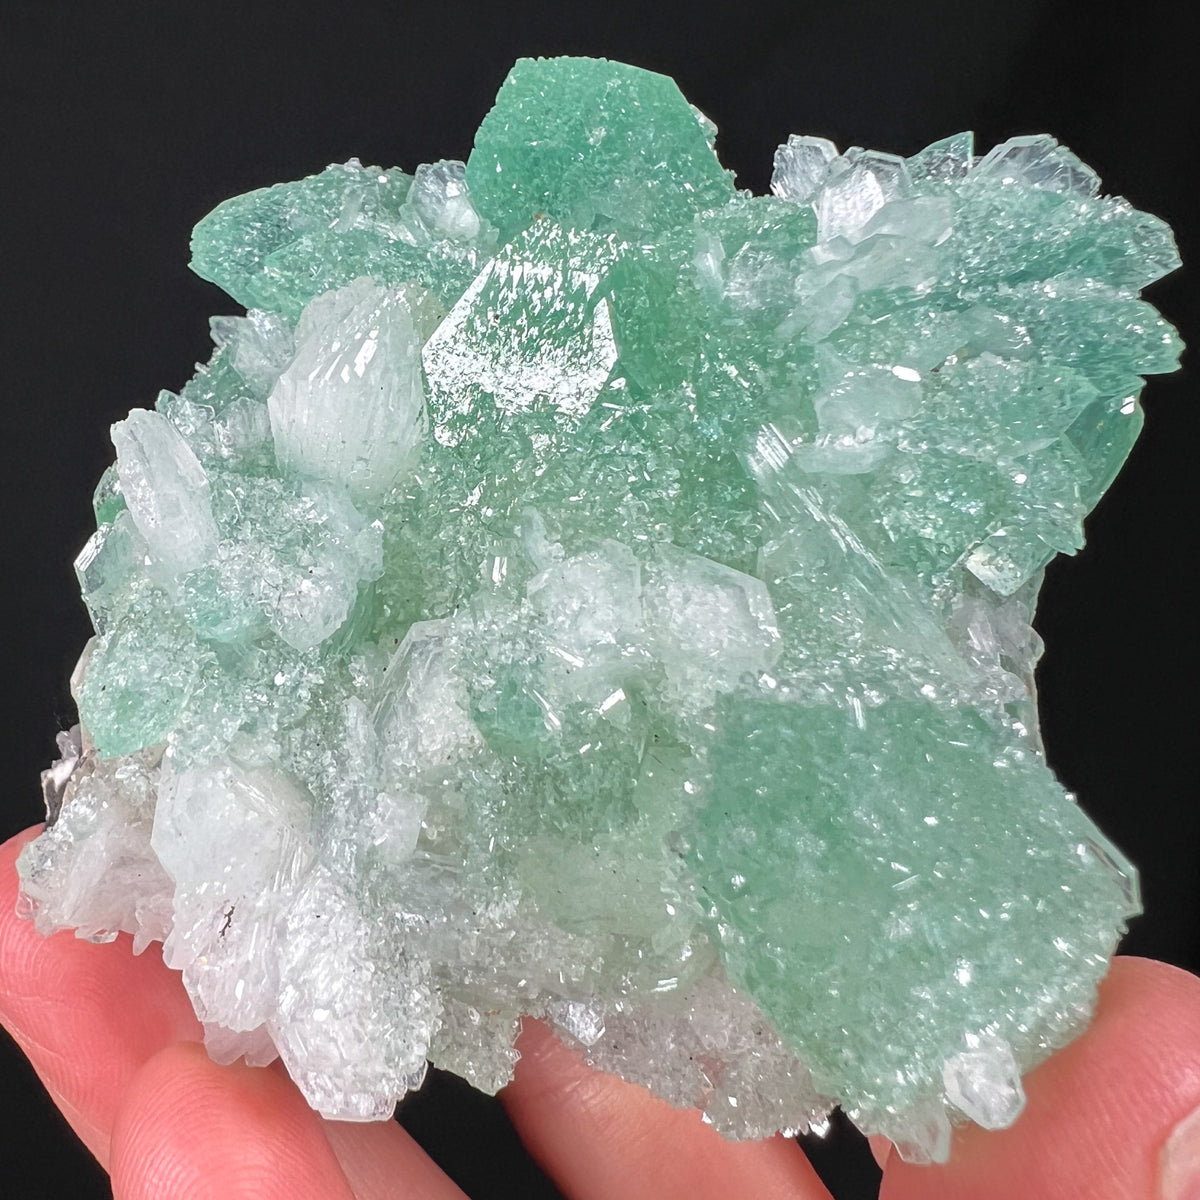 Green Apophyllite Crystals with White Stilbite Crystals